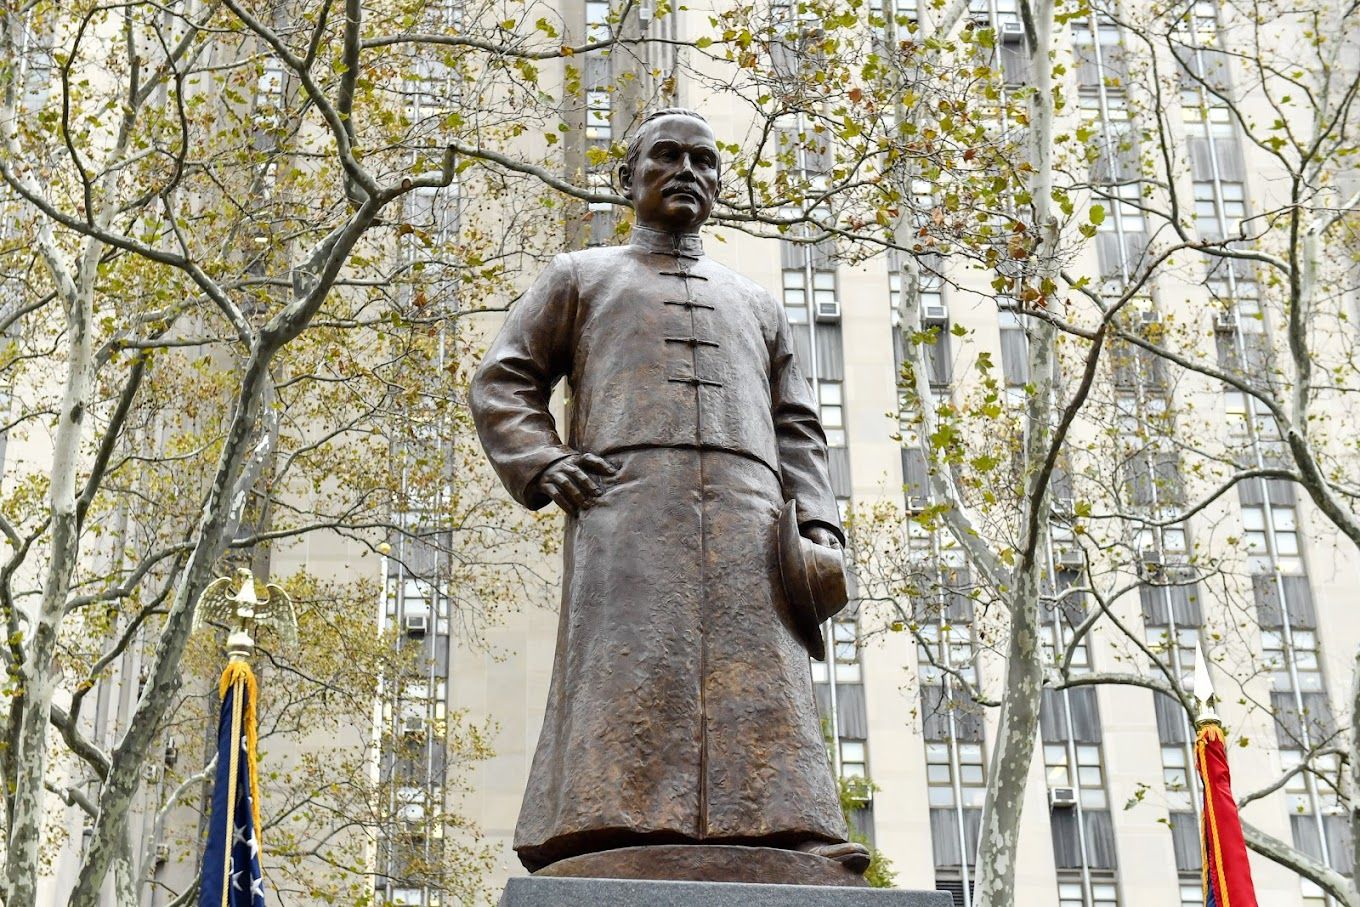 Dr. Sun Yat-sen Plaza